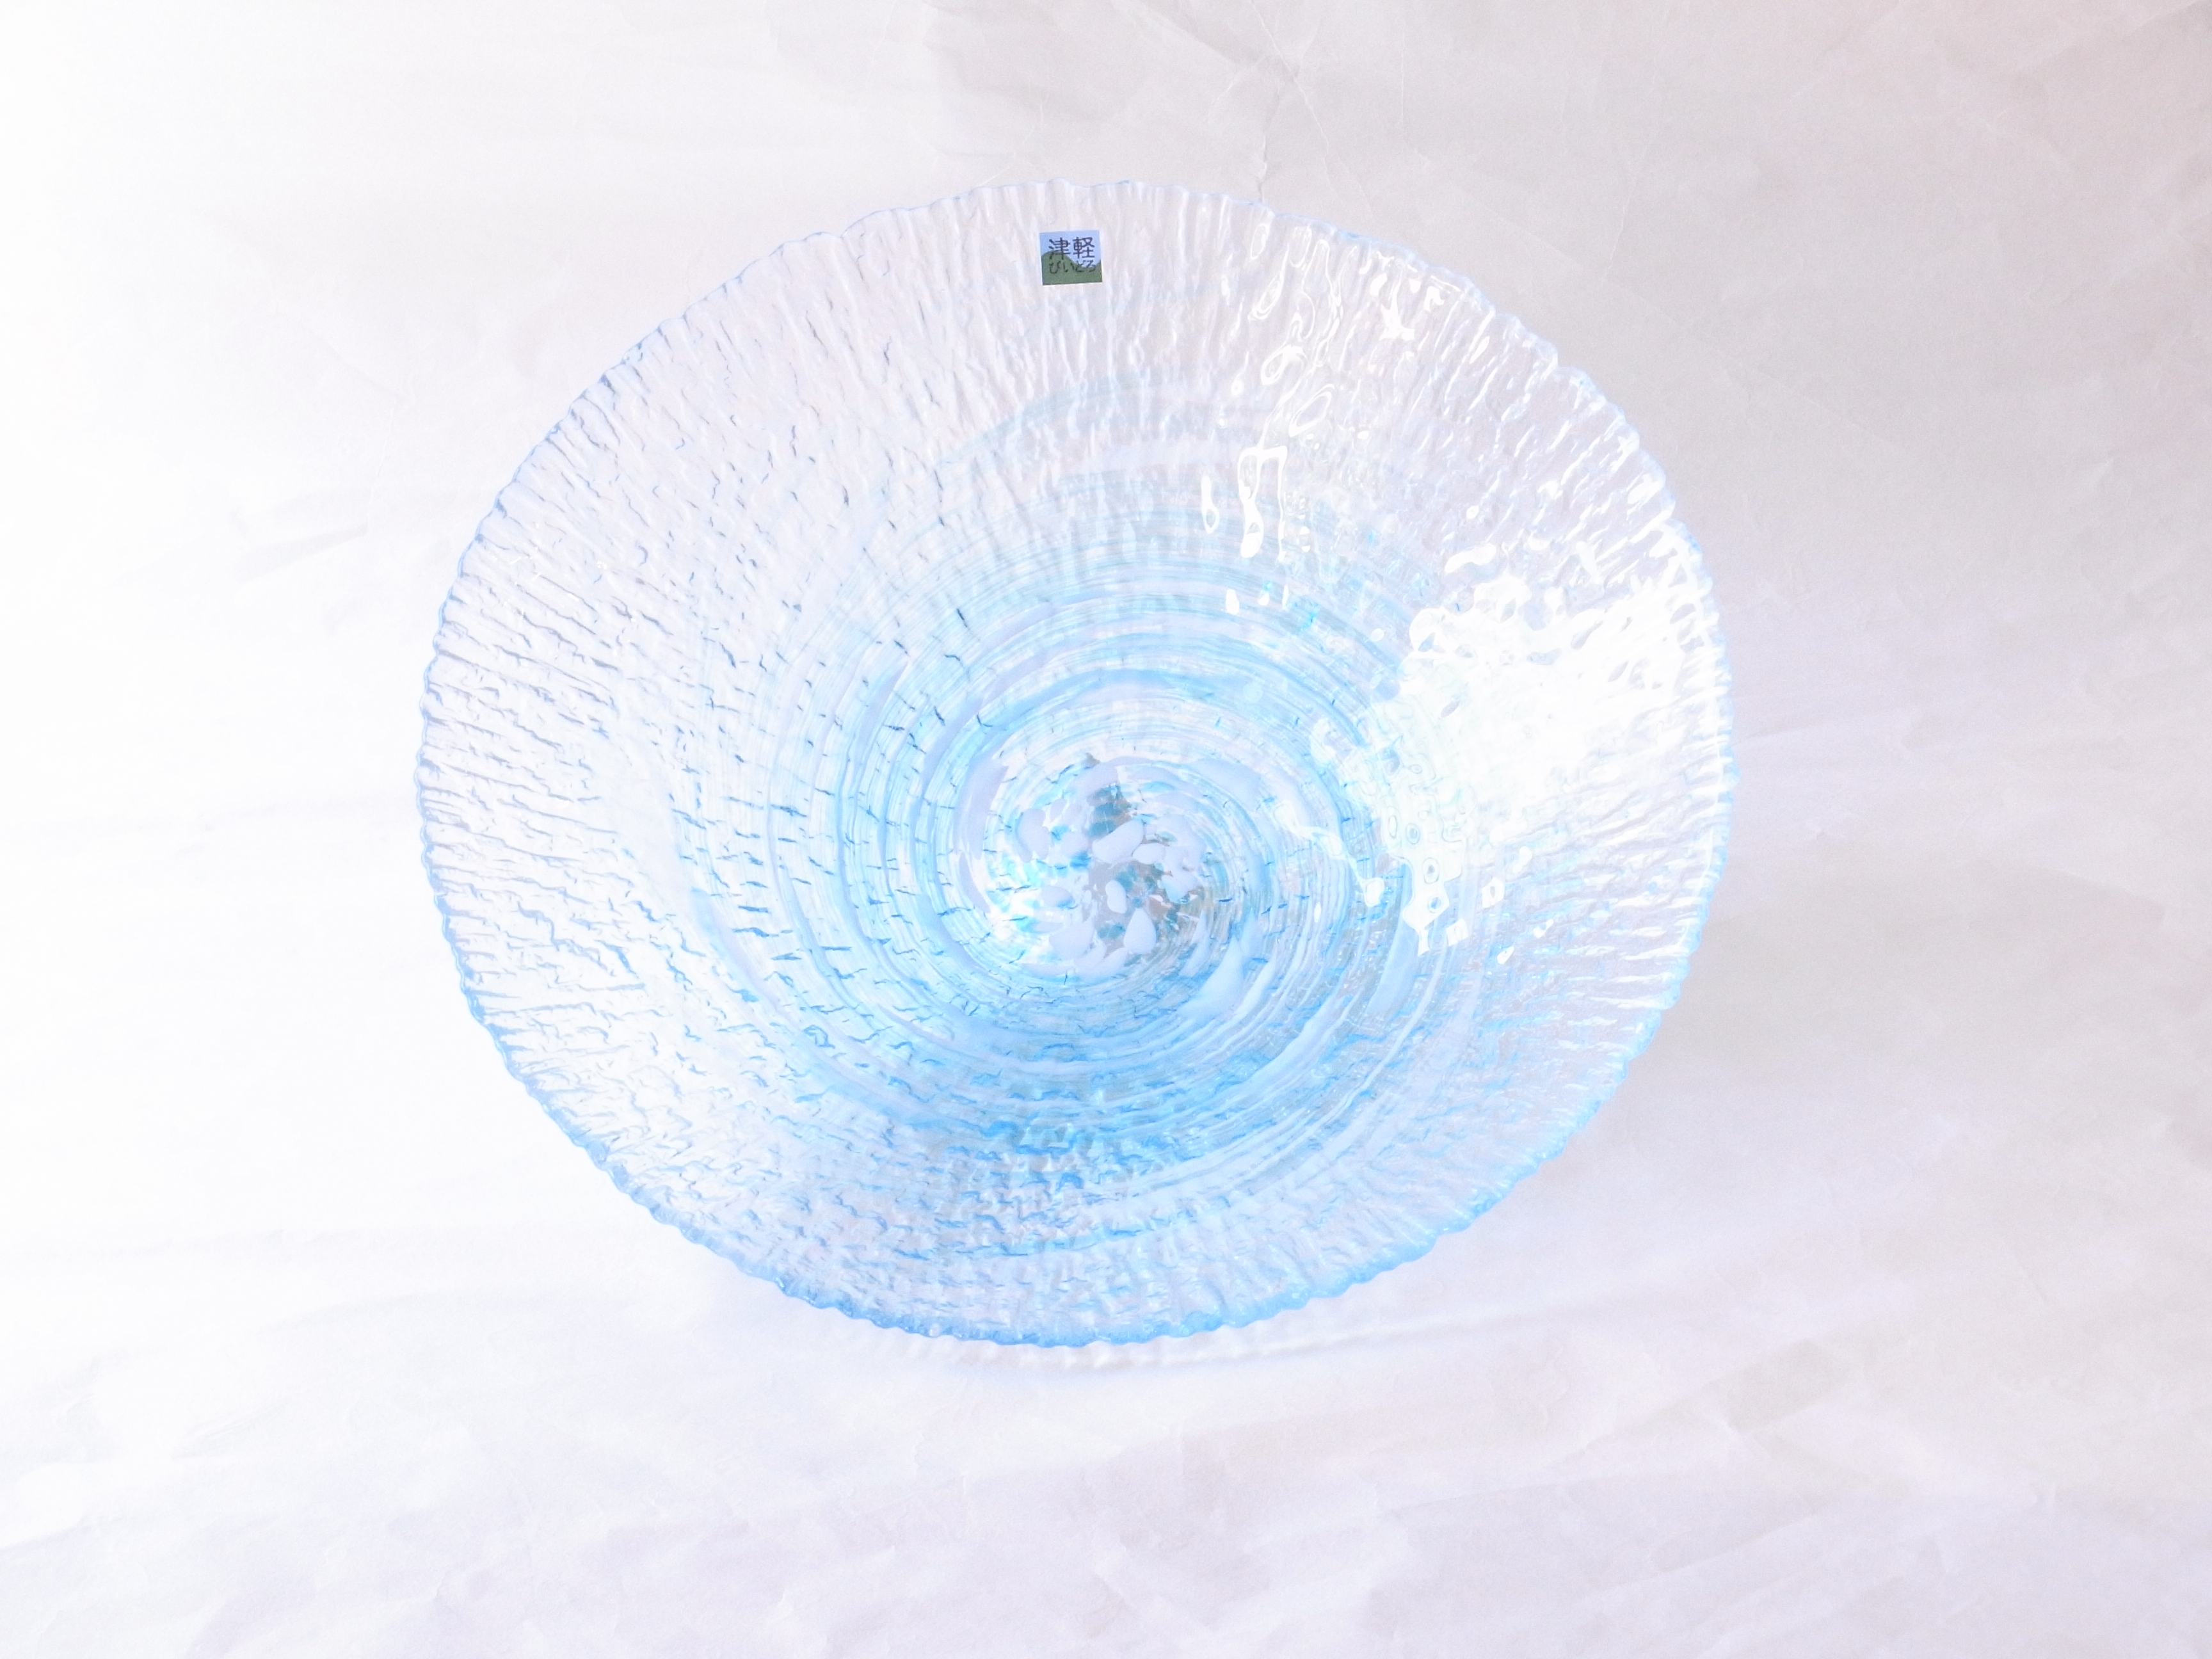 ガラス器　津軽びいどろ　水盤　花器　青森県の伝統工芸品　宙吹き　青森の自然をイメージ　ハンドメイド　美しい色ガラス　独自の調合　世界に類を見ない　多様な技術や技法　多彩な色使い　繊細な模様　美しい造形とデザイン　職人の手仕事から生まれる　花を生ける　水をはって浮き球を浮かべる　サラダやデザートを盛る　白やブルーの色が渦状になっている　水の流れのよう　涼を感じることができる　メイドインジャパンの工芸品　日本製　陶器　磁器　陶磁器　漆器　茶道具　華道具　贈り物　ギフト　記念品　引出物　法要　お返し　専門店　リアル店舗　高品質　安らぎ　いやし　よりおいしく　安心　機能的　長持ち　人気　おすすめ　高機能　ネット通販　ネットショップ　セレクトショップ　欲しい　購入　買う　買い物　岐阜県　岐阜市　美殿町　小林漆陶　特別な　選び抜かれた　品質重視　使いやすい　格安　老舗　誕生日　結婚　出産　入学　退職　母の日　父の日　敬老の日　クリスマス　プレゼント　叙勲　長寿　お祝い　御礼　内祝い　外国土産　海外みやげ　実店舗　創業１００年以上　使うと分かる　職人技 日本一の品揃え　日本一の在庫数　専門店　専門知識　数万点の在庫　百貨店（高島屋　三越　伊勢丹　松坂屋　大丸）にない　手作り　お洒落　高級品　希少価値　上質な器 伝統工芸品　コスパ　お値打ち　お買い得　堅牢　飽きない　永く使える　お気に入り　国産　料理が映える　満足感　豊かな食生活　豊かな食文化　こだわりの器　日本文化　他にない　ここにしかない　オリジナル　独自の　個性的　ここでしか買えない　超レアもの　一品もの　現品限り　入手困難　いい器　匠の技　美しい　実用的　外人が喜ぶ店　外人が珍しがる店　外人がうれしい店　日本各地の一級品を売る店　日本全国の器を売る店　本当にいいもの コスパ高い　一流品　修理　選りすぐりの逸品　周年記念　日本土産　岐阜土産　料理を引き立てる器　高級店　一流店　岐阜で一番　東海で一番　中部で一番　日本で一番　おしゃれな店　地域一番店　実店舗　陶磁器　磁器　華道具　ガラス器　明治４２年創業　有田焼　清水焼　美濃焼　赤津焼　万古焼　常滑焼　九谷焼　唐津焼　萩焼　信楽焼　万古焼　砥部焼　備前焼　丹波焼　山中塗　春慶塗　讃岐塗　越前塗　輪島塗　紀州塗　会津塗　小田原木工　桜皮細工　秋田杉　駿河竹細工　七宝焼　南部鉄器　錫製品　江戸切子　津軽びいどろ　　　　　　